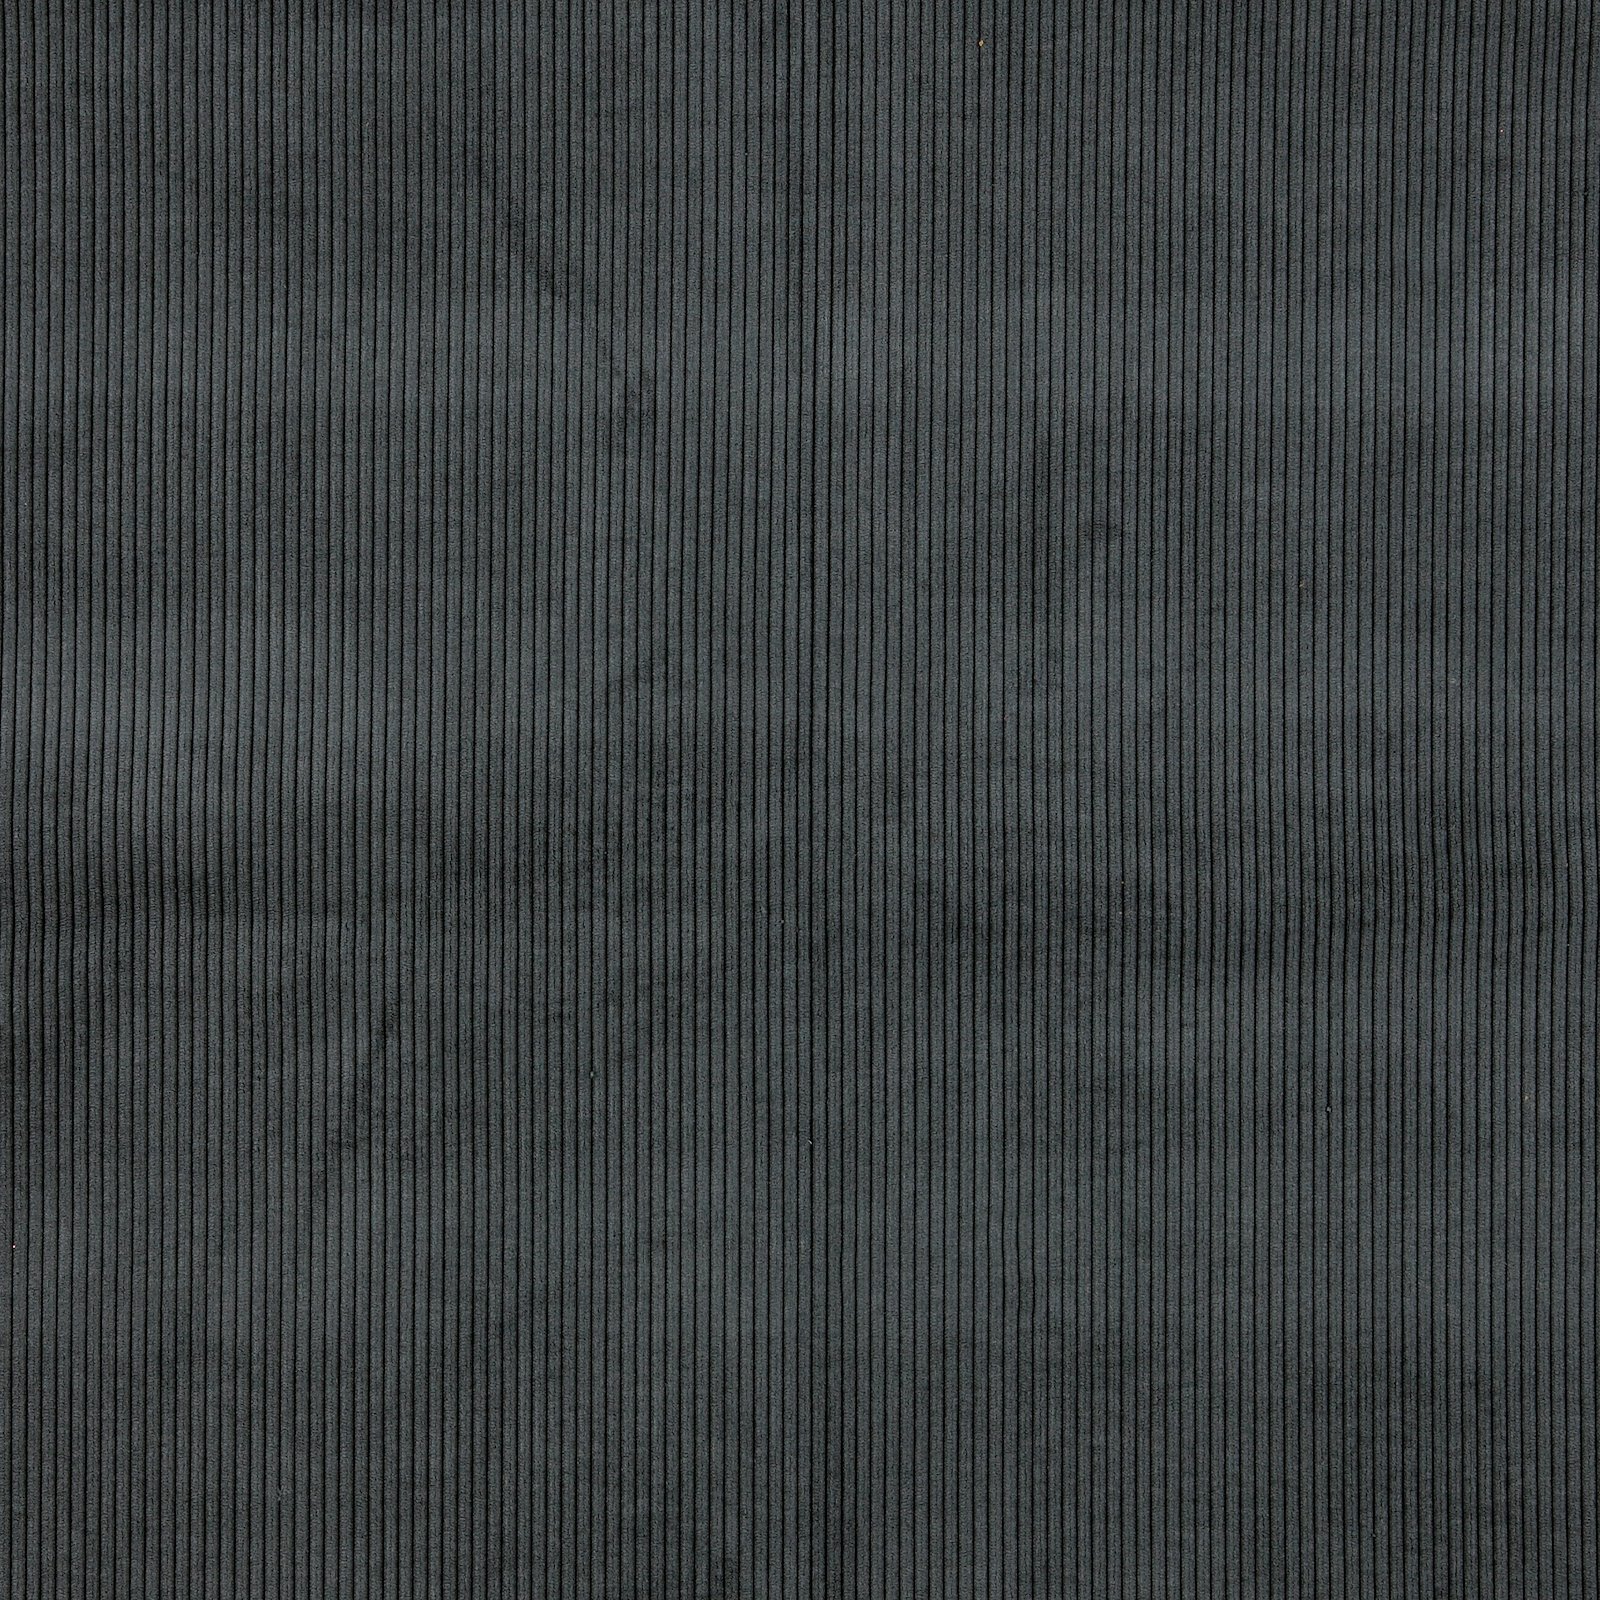 Upholstery corduroy 6 wales dark grey 823769_pack_solid